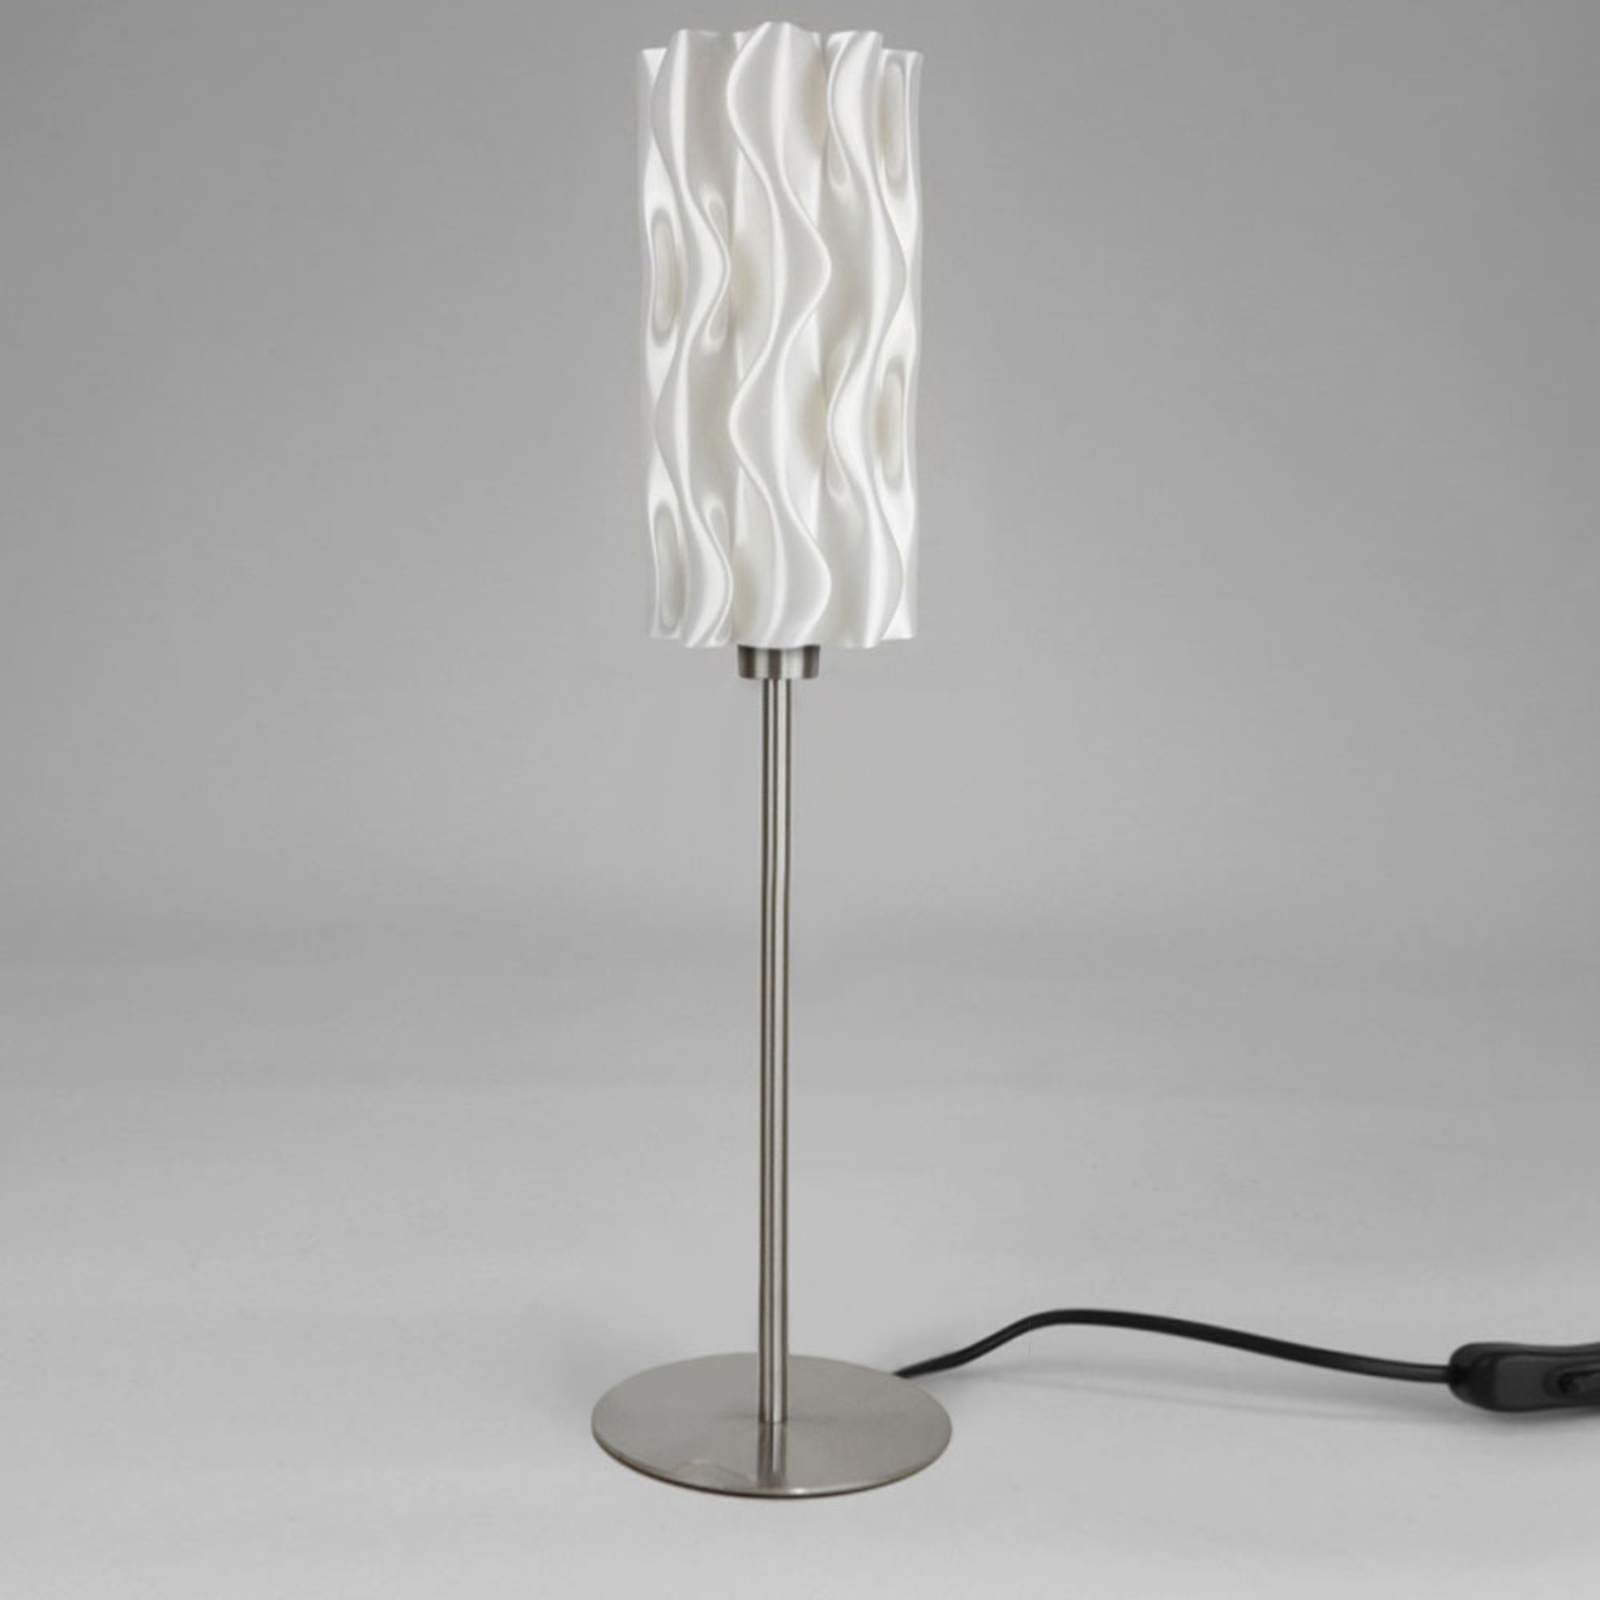 Lampa stołowa Amöbe z biomateriału, wysokość 70 cm